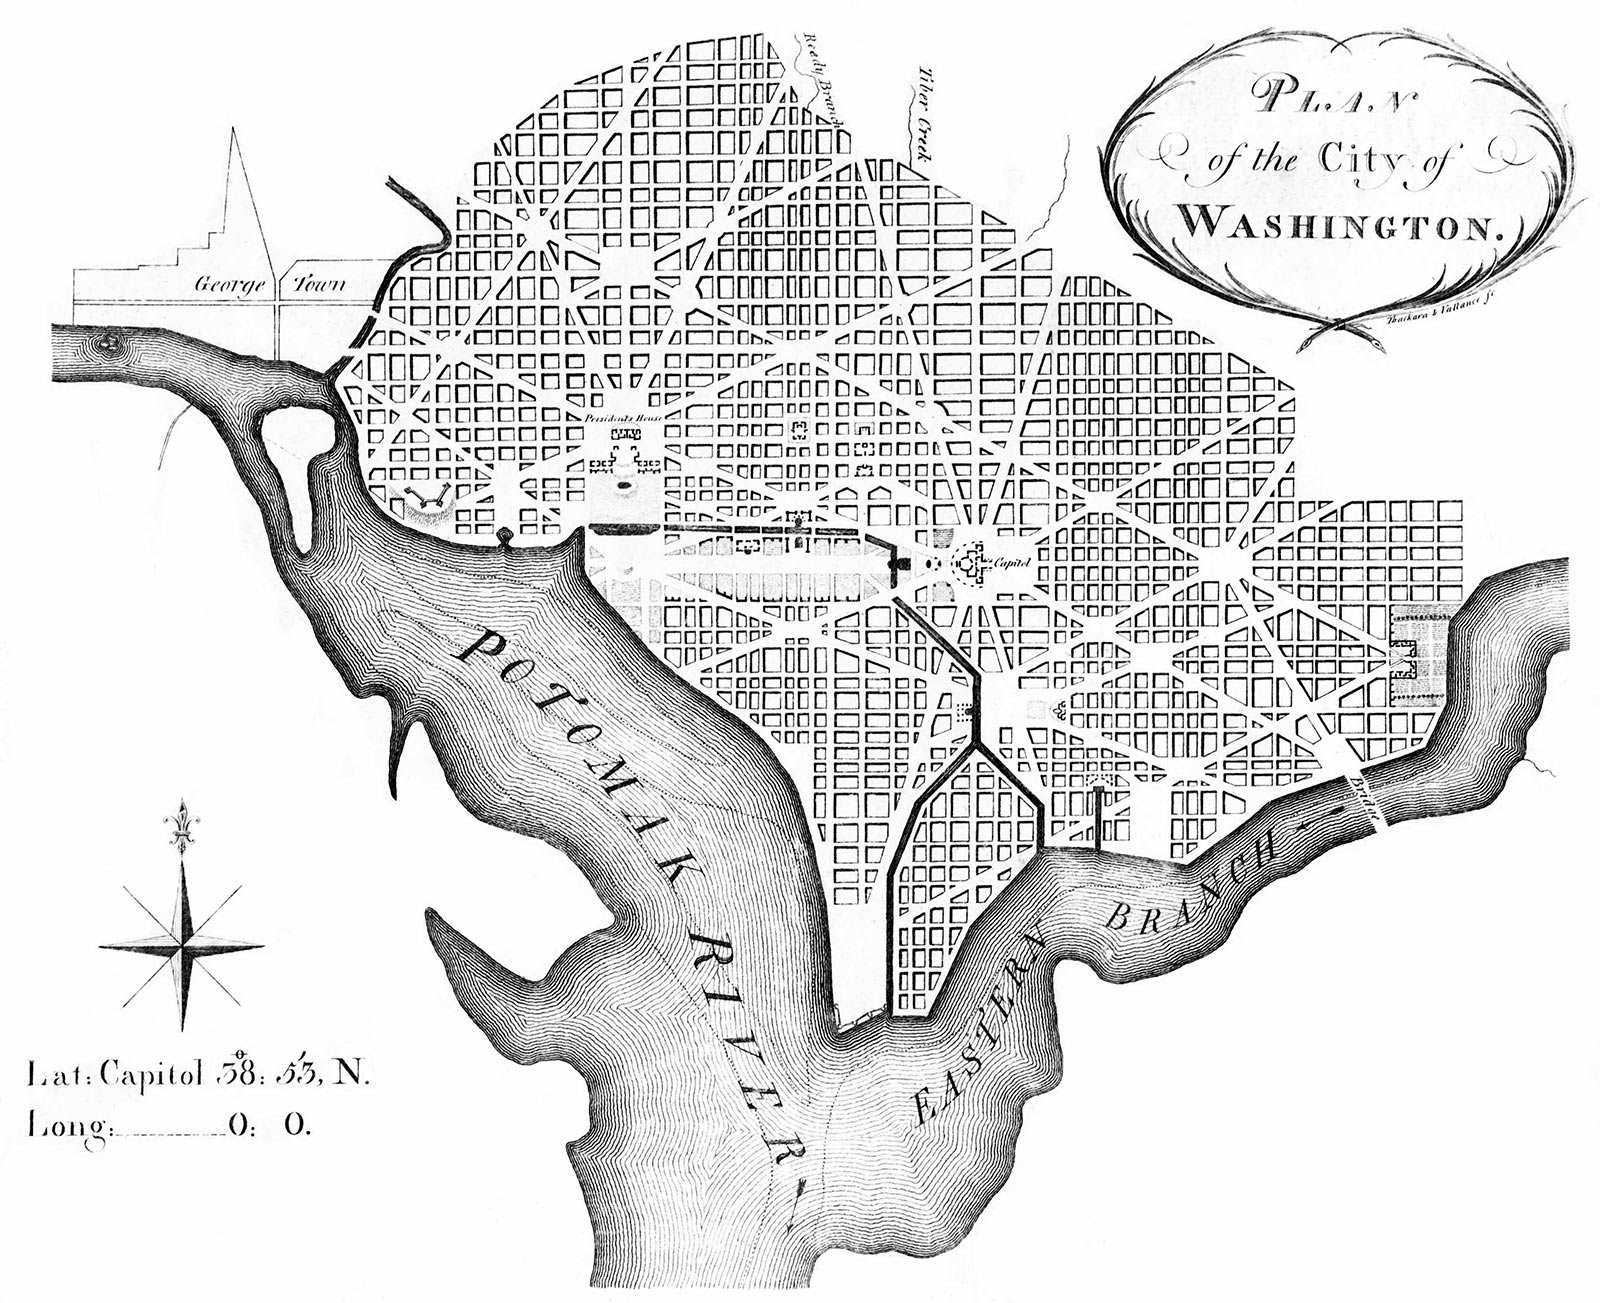 Planos Originais de L'Enfant para Washington março de 1792